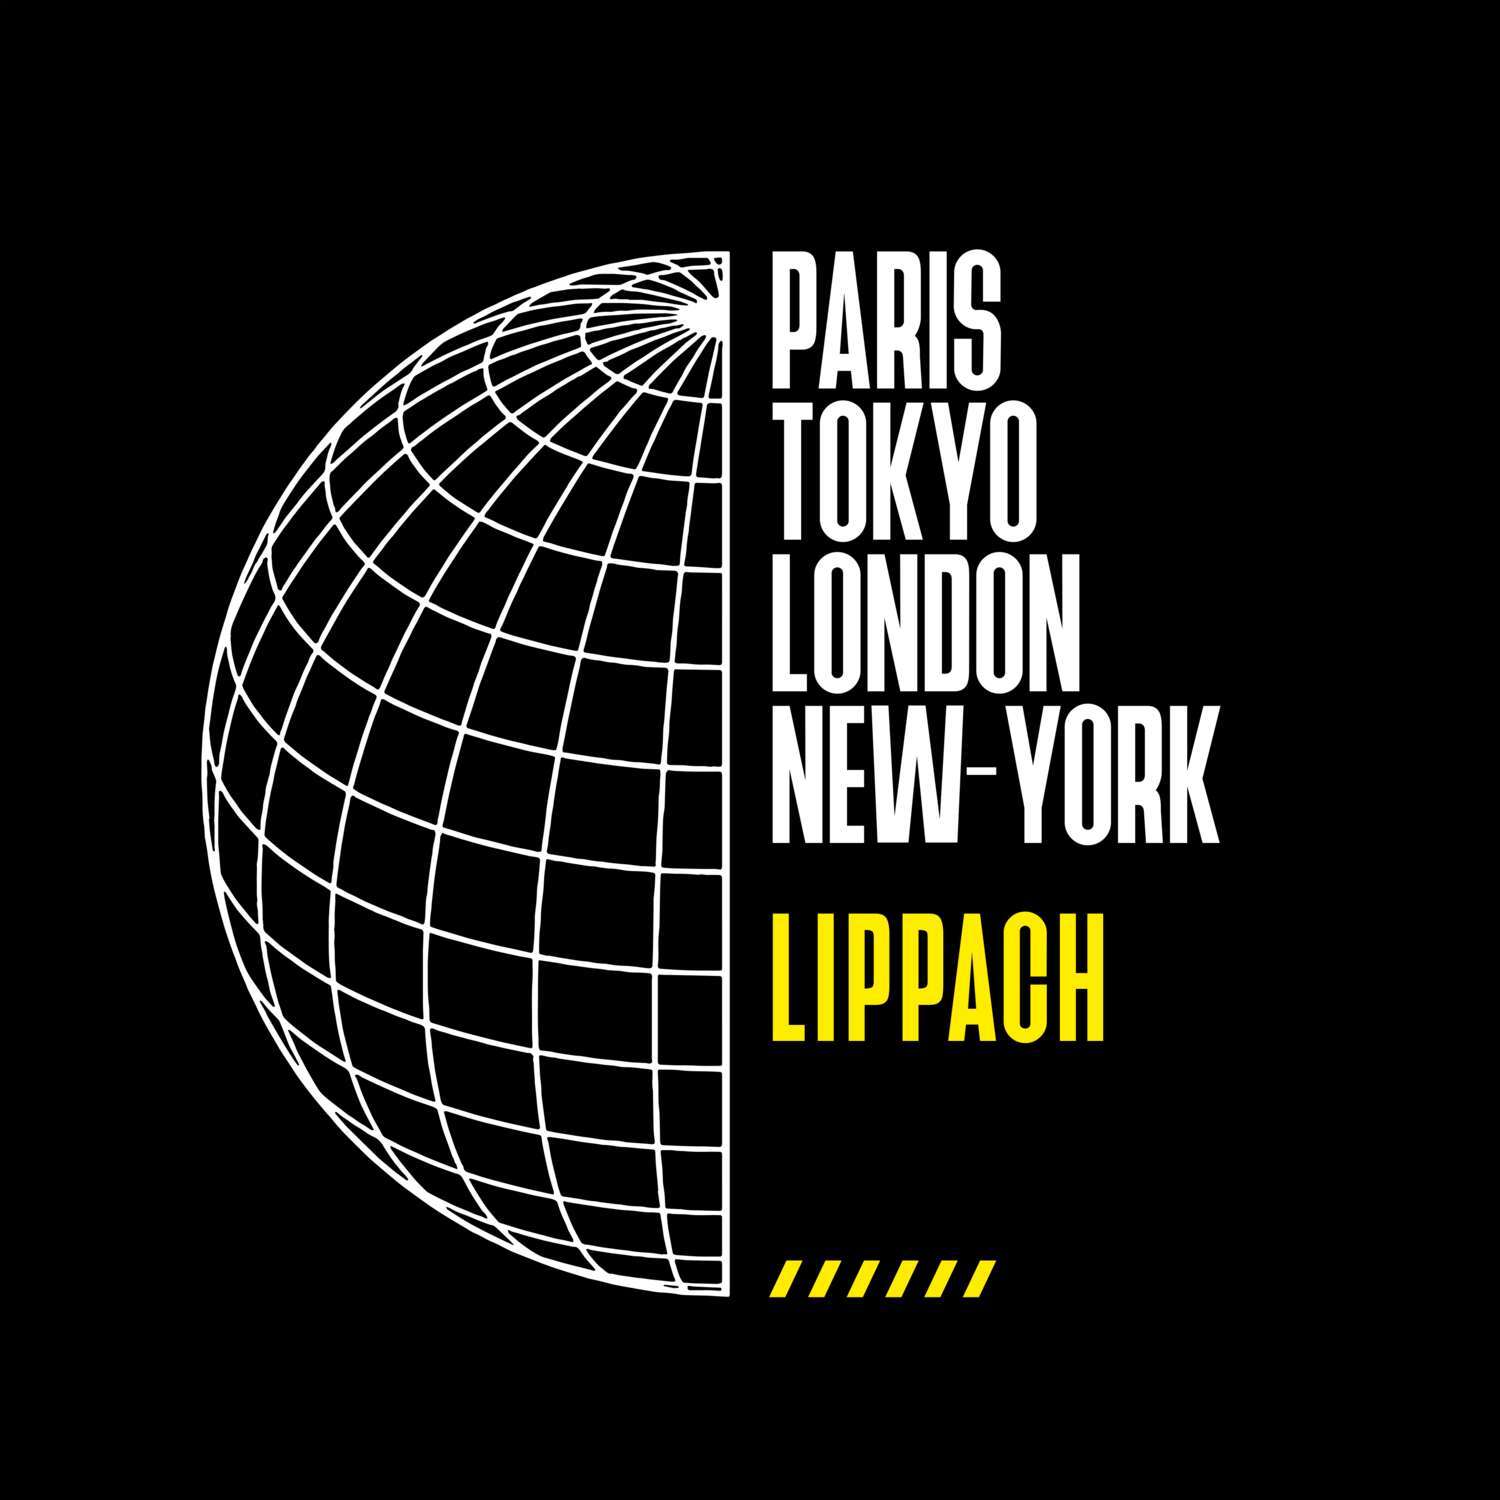 Lippach T-Shirt »Paris Tokyo London«